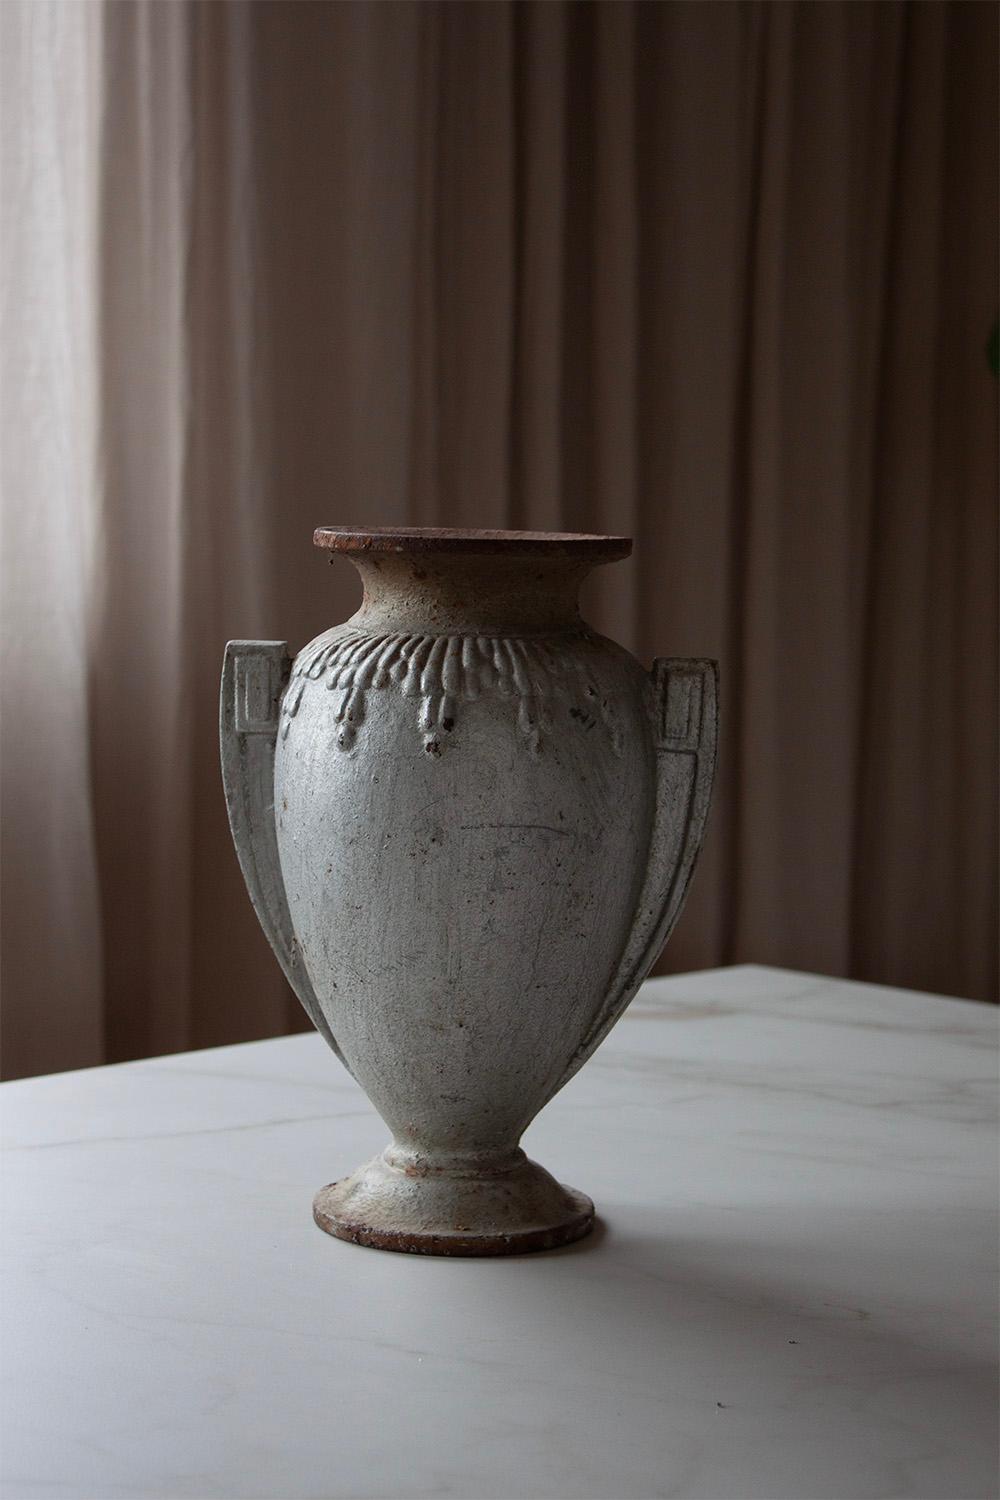 Diese französische Art-Déco-Vase ist ein großartiges Beispiel dafür, wie geometrische und organische Formen harmonisch zusammenwirken können. 
Diese besondere Vase besticht durch ihre schlanke Silhouette und ihr geometrisches Muster, das an den